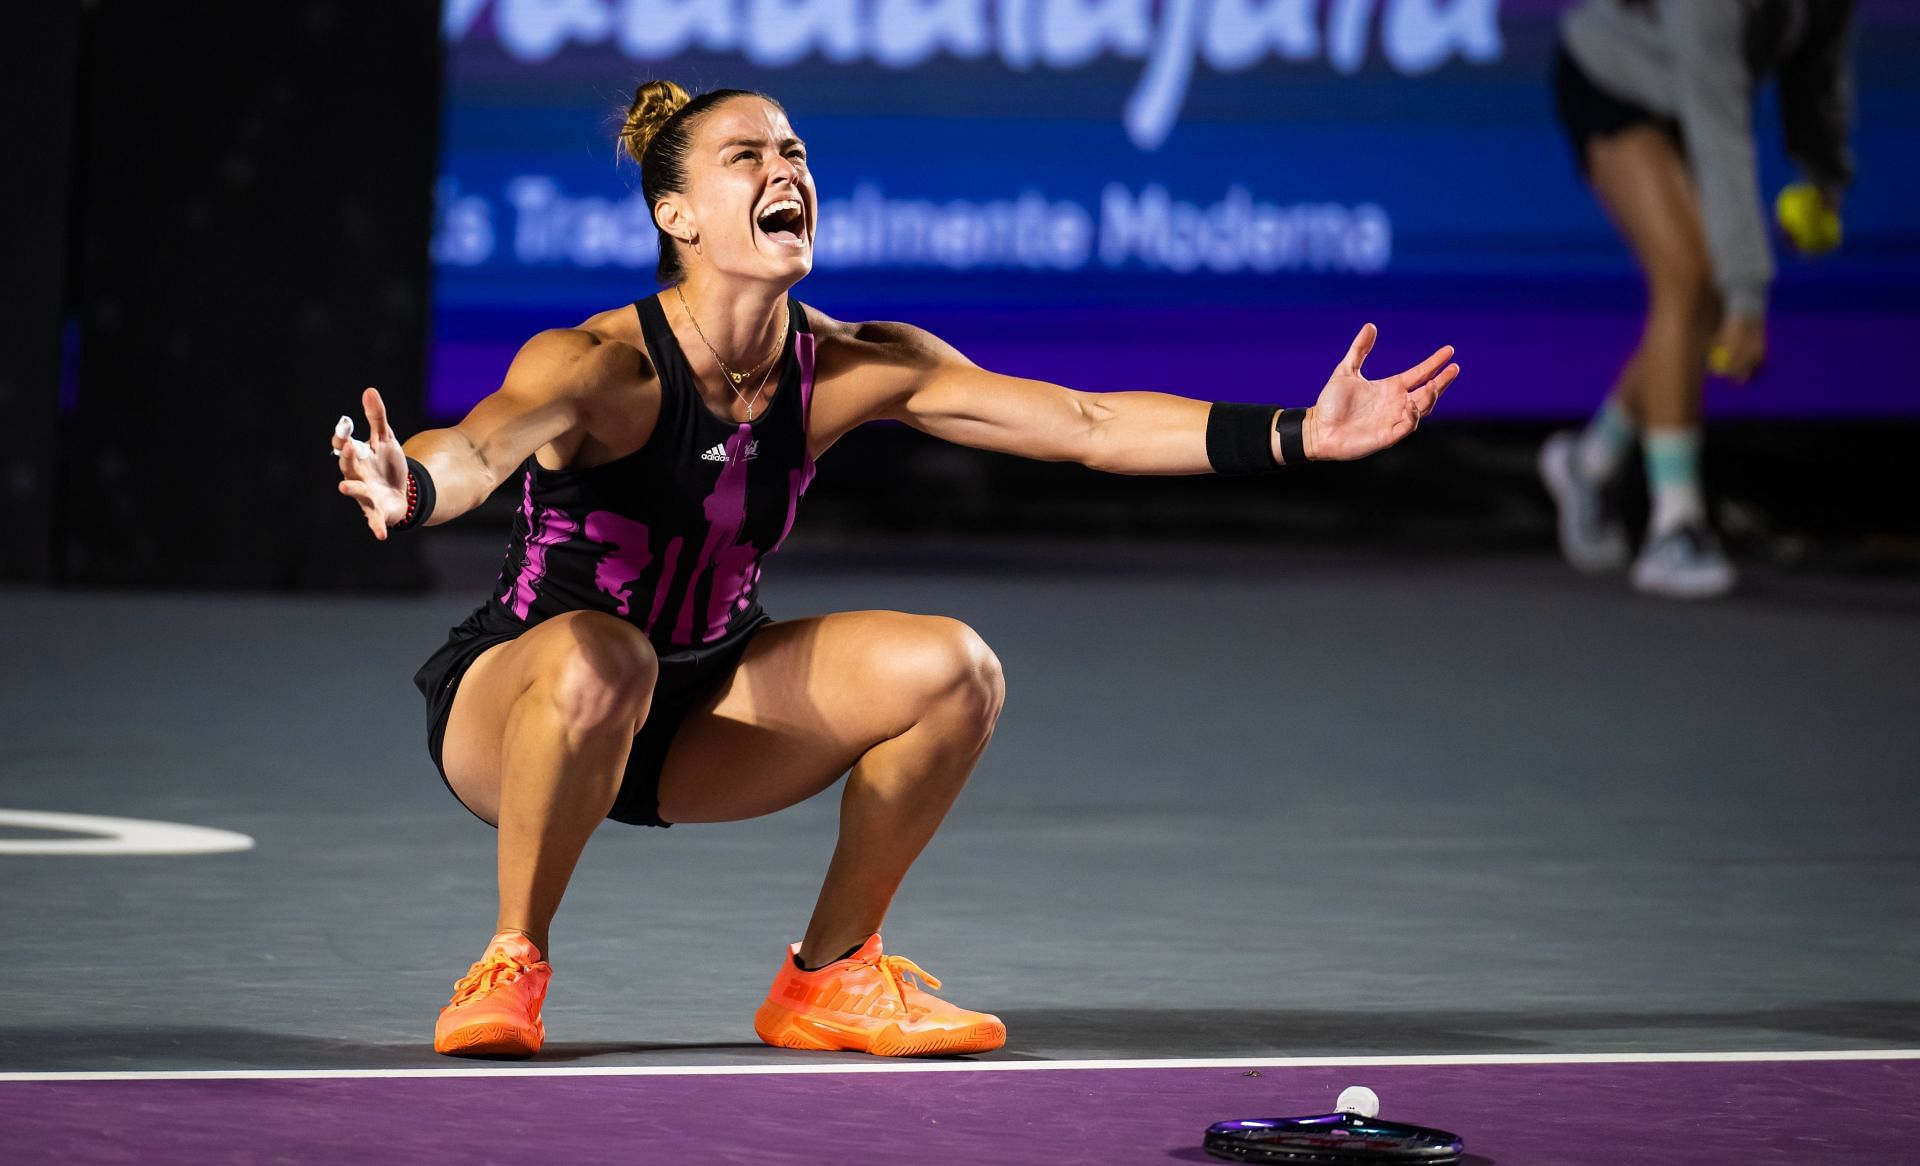 Maria Sakkari celebrates at the Guadalajara Open (pic credit: WTA).